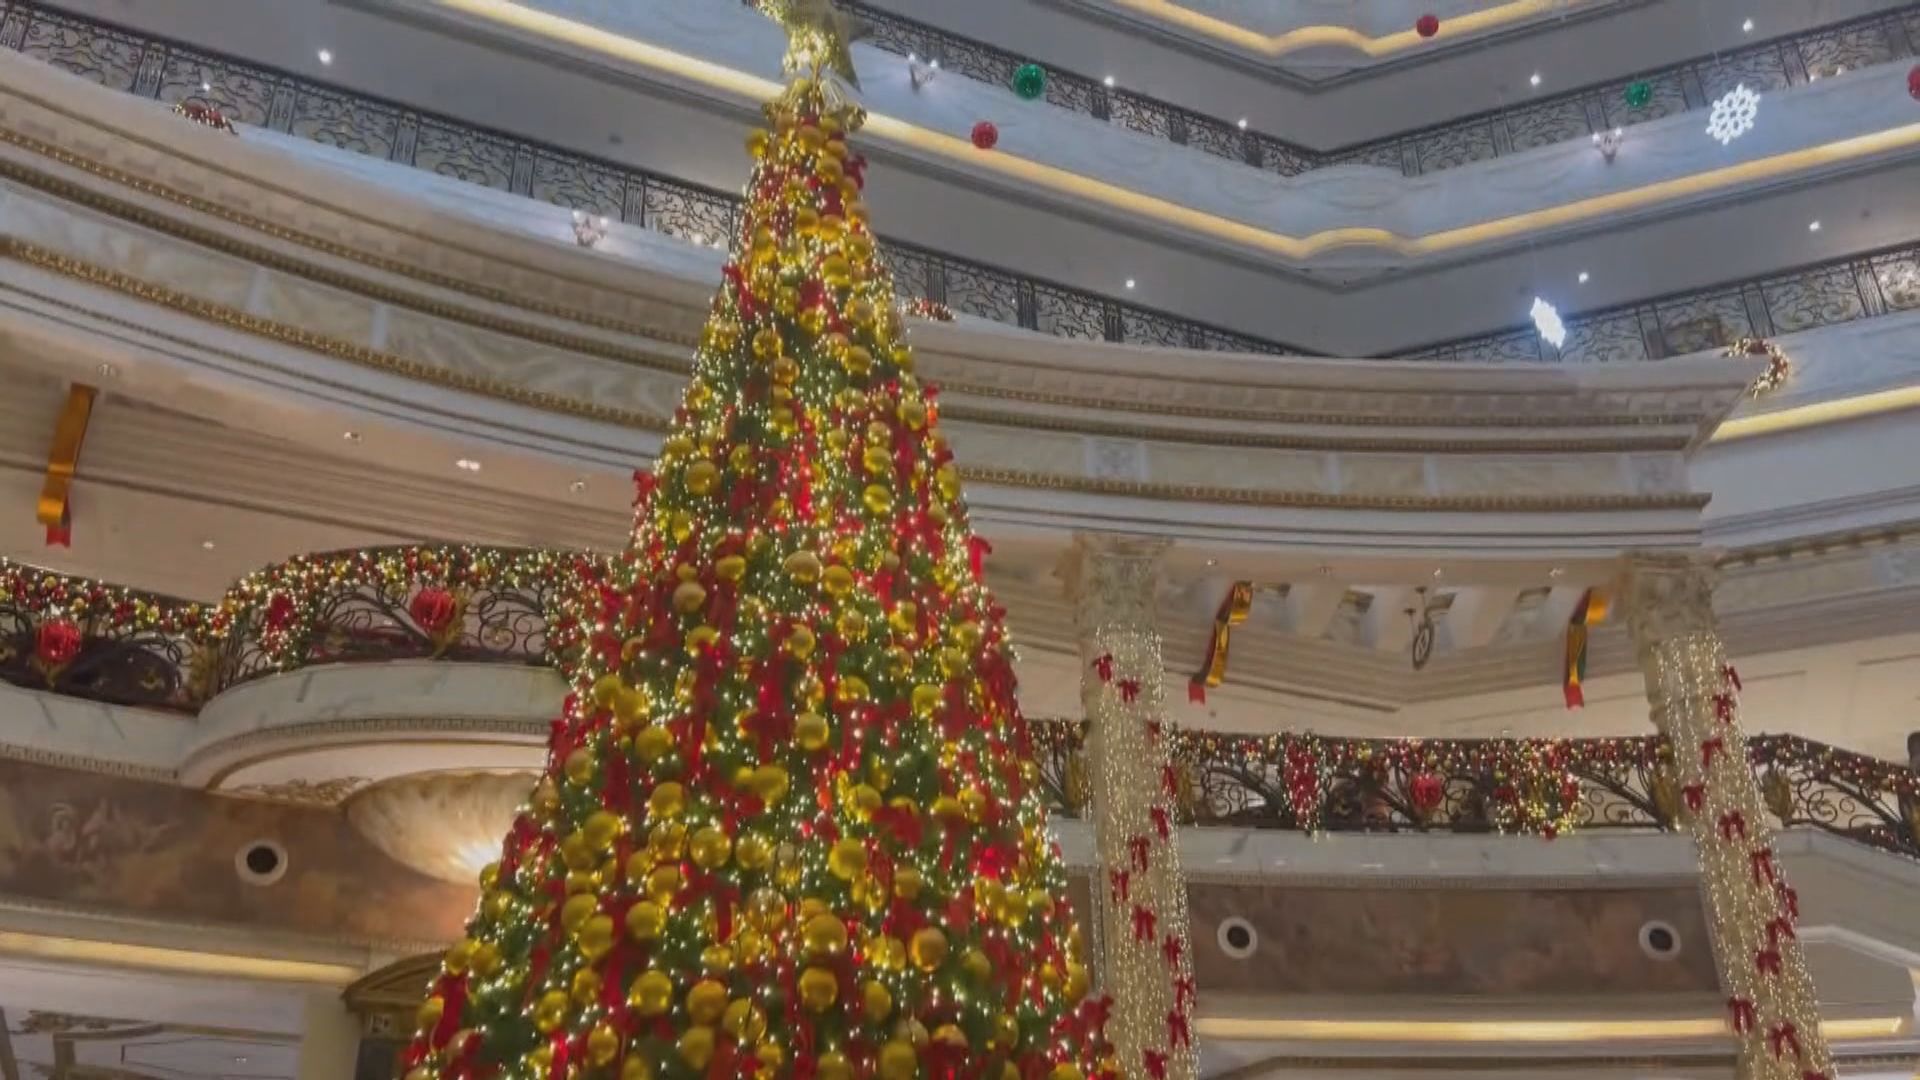 【首都專線】北京多處現聖誕氣氛 大使館辦市集增文化交流